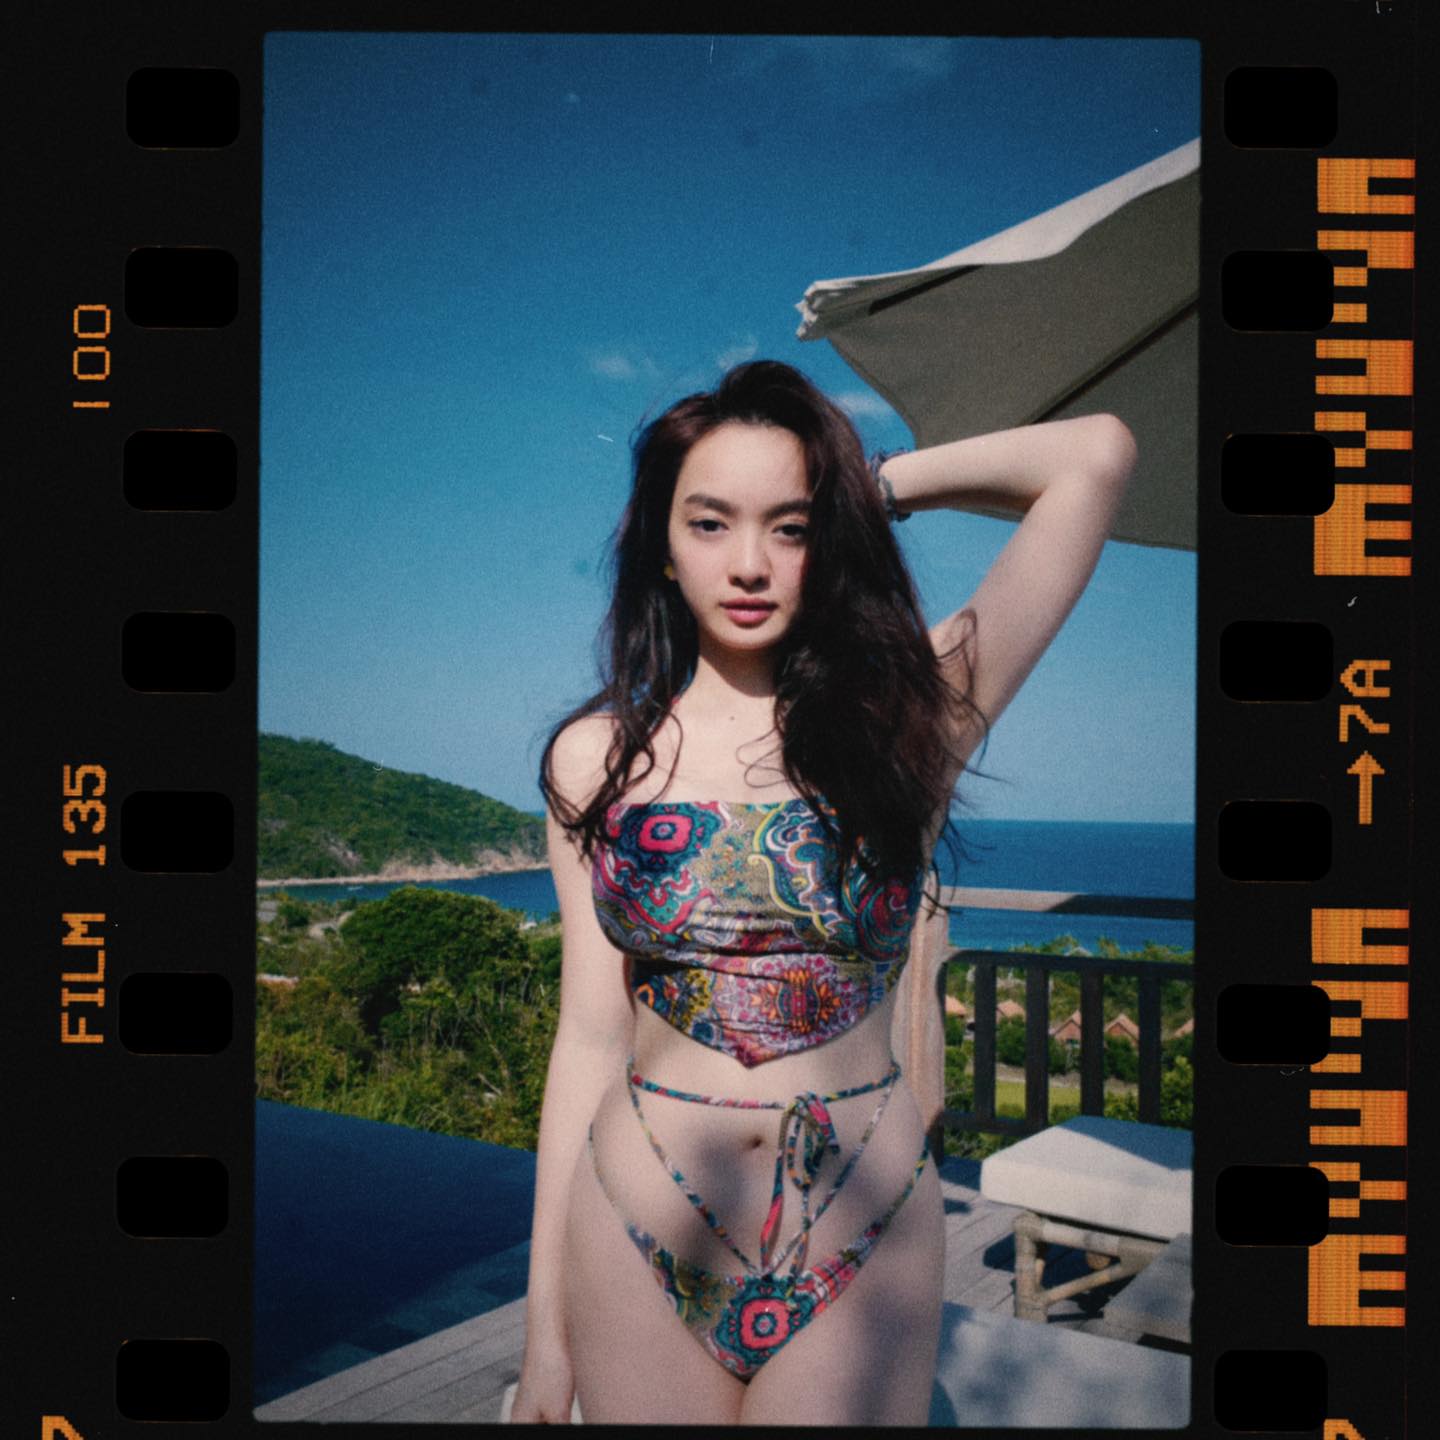 Kaity Nguyễn quyến rũ hút hồn với bikini hai mảnh họa tiết. Sau khi giảm cân thành công, nữ chính Em chưa 18 ngày càng nổi bật với vẻ trưởng thành, cá tính.